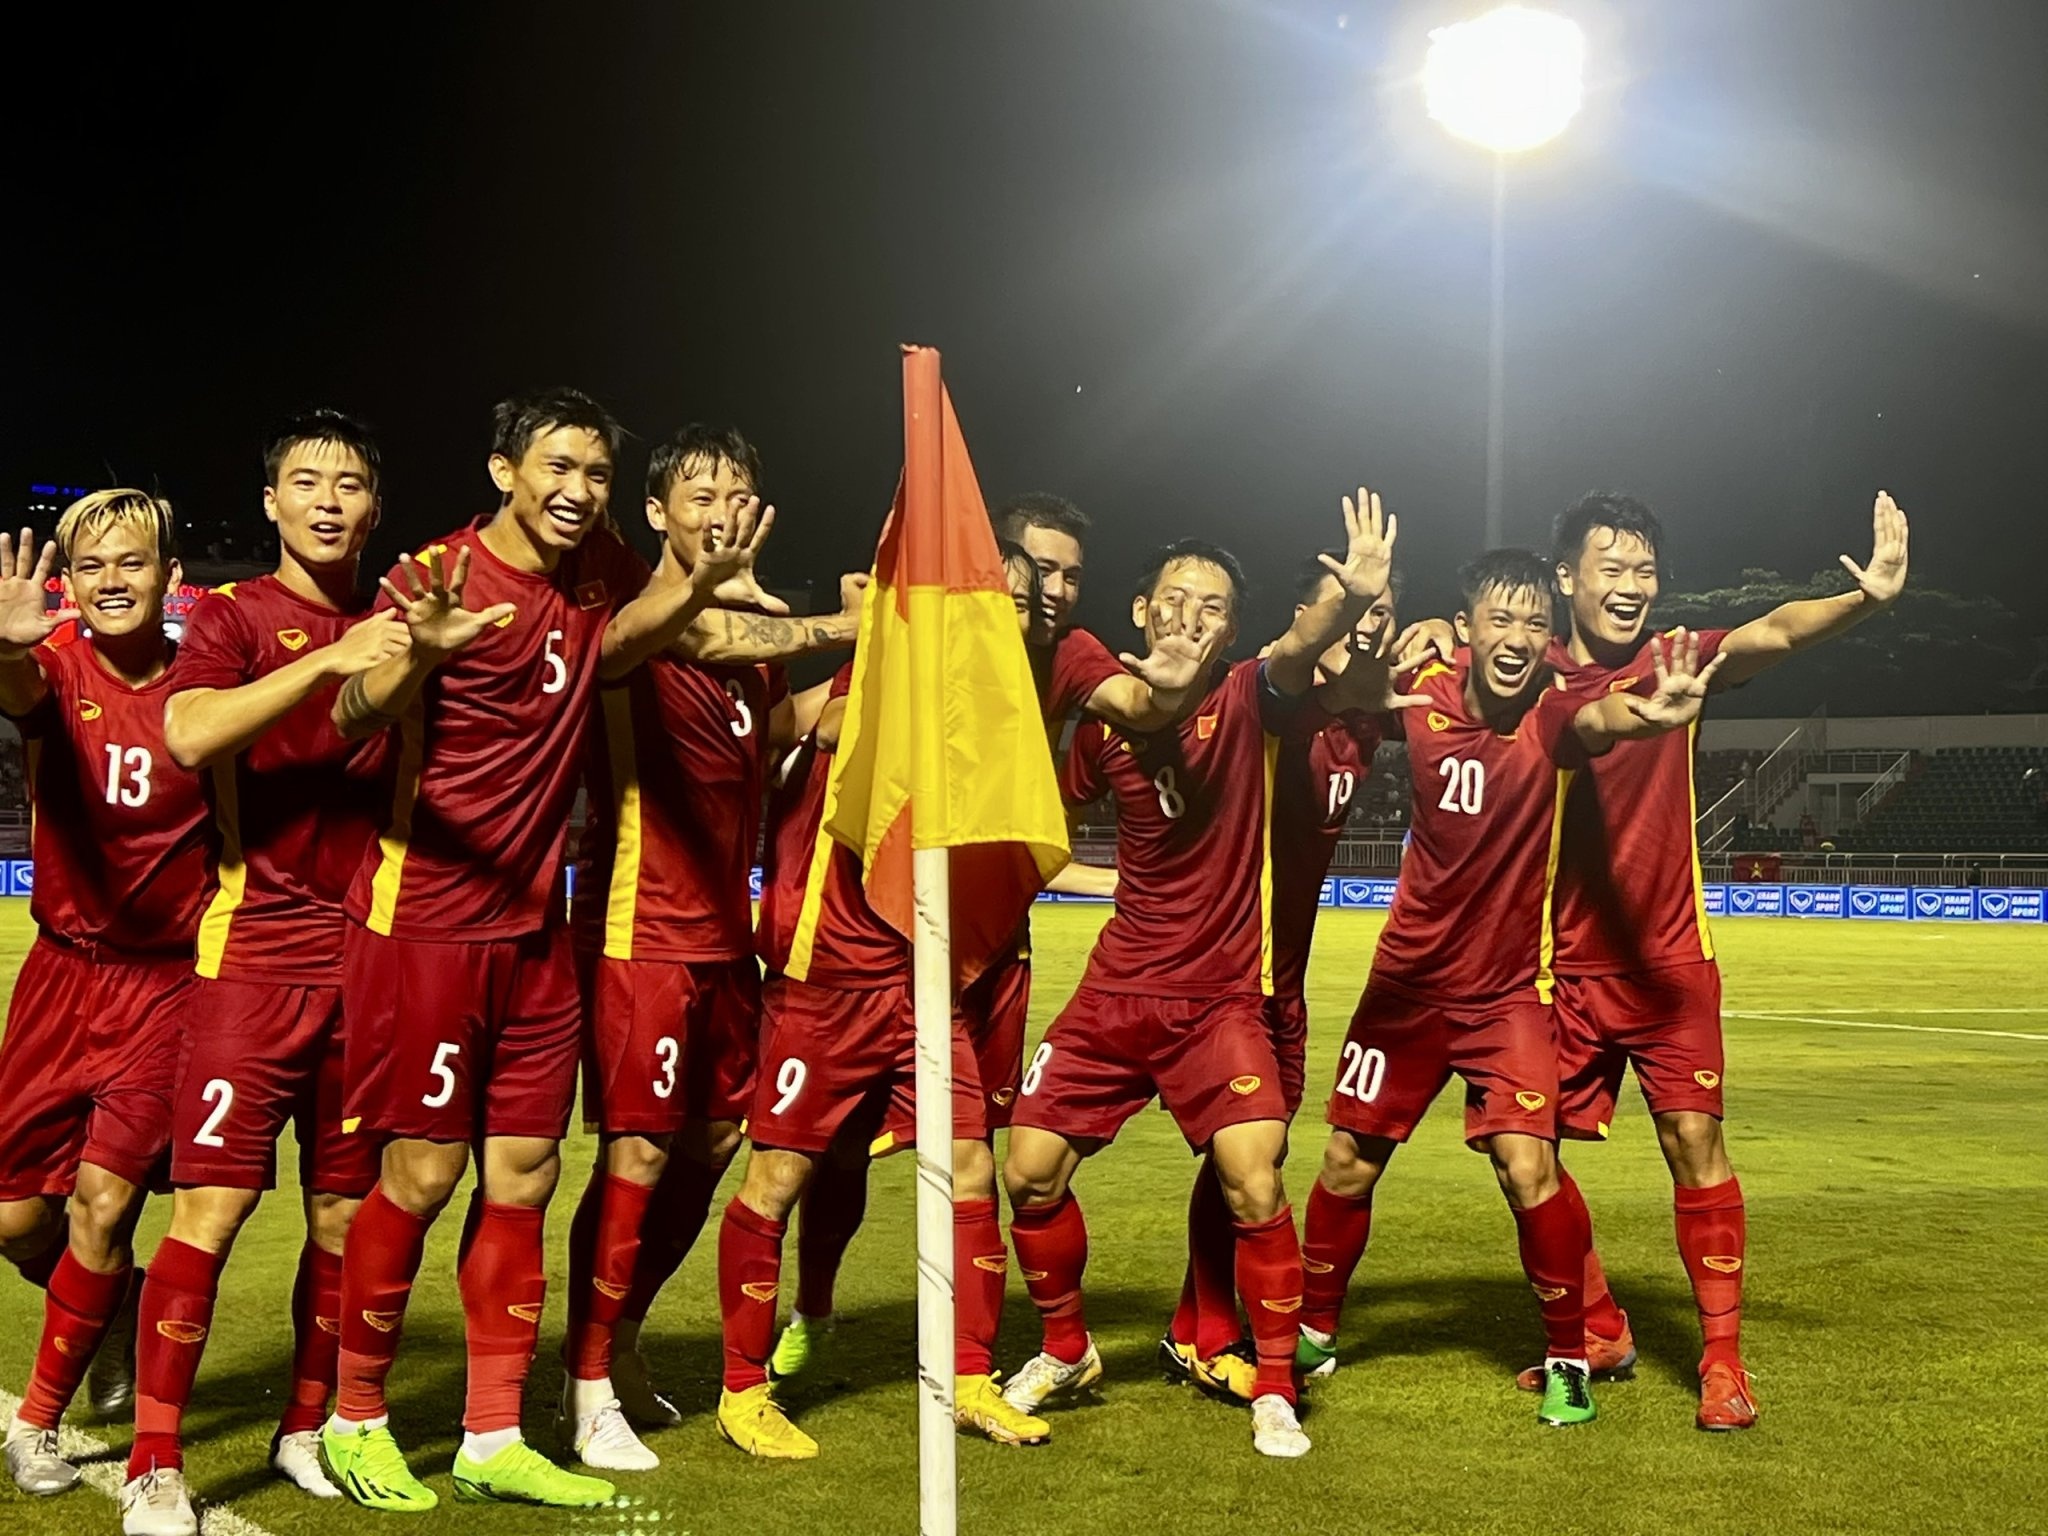 Thăng hạng FIFA Việt Nam: Điều lý thú khi tuyển bóng đá Việt Nam thăng hạng trên BXH FIFA. Quá trình cố gắng và chiến thắng của đội tuyển được tái hiện đầy đủ và ấn tượng trong bộ sưu tập hình ảnh này. Hãy cùng chiêm ngưỡng những khoảnh khắc tuyệt vời của đội bóng xứng đáng được vinh danh này.